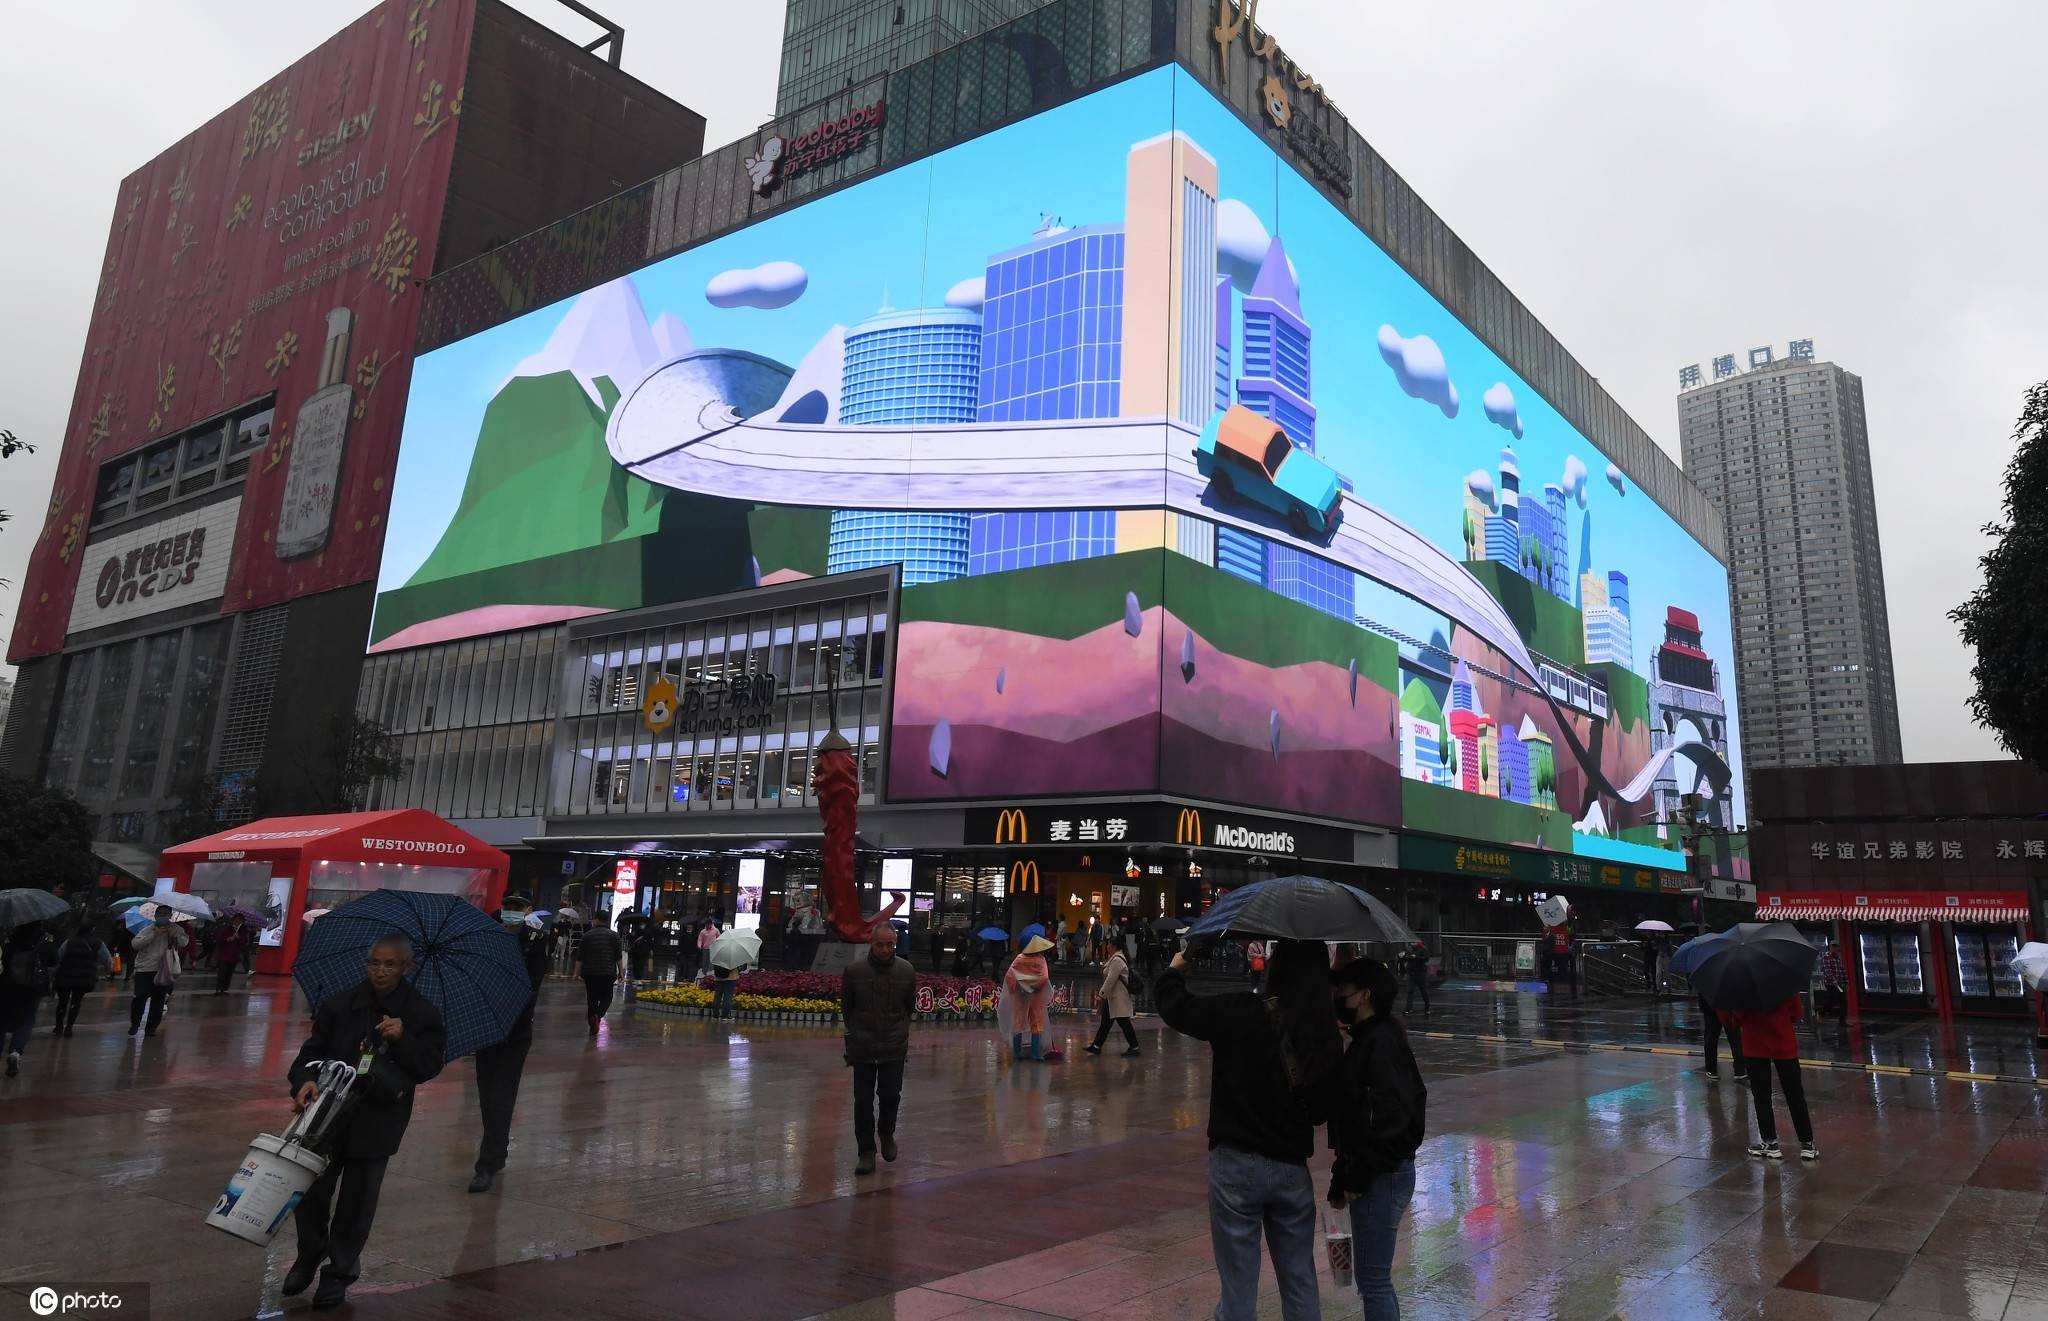 巨型裸眼3d屏亮相重庆超酷炫"太空飞船"引人冒雨围观"打卡"